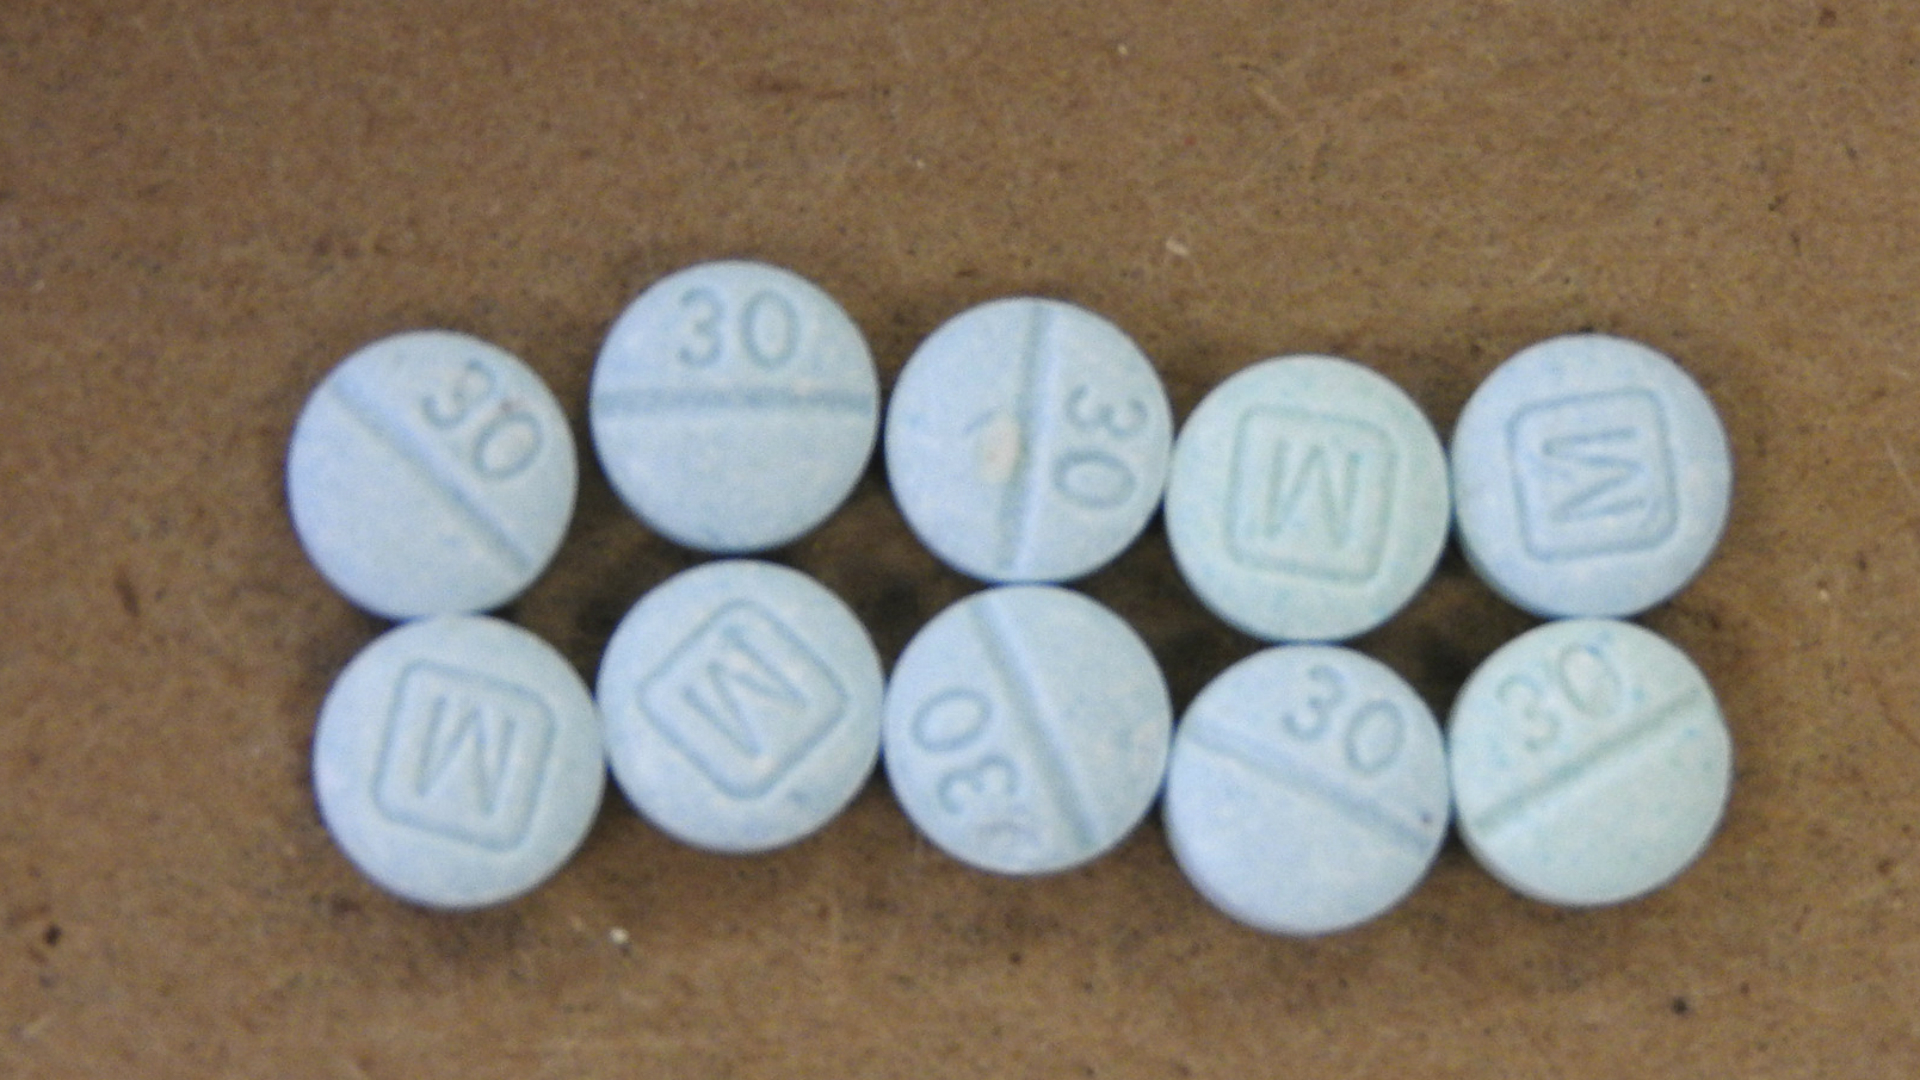 La red criminal se encargaba de combinar heroína y fentanilo para, posteriormente, venderla a consumidores incautos en EEUU.